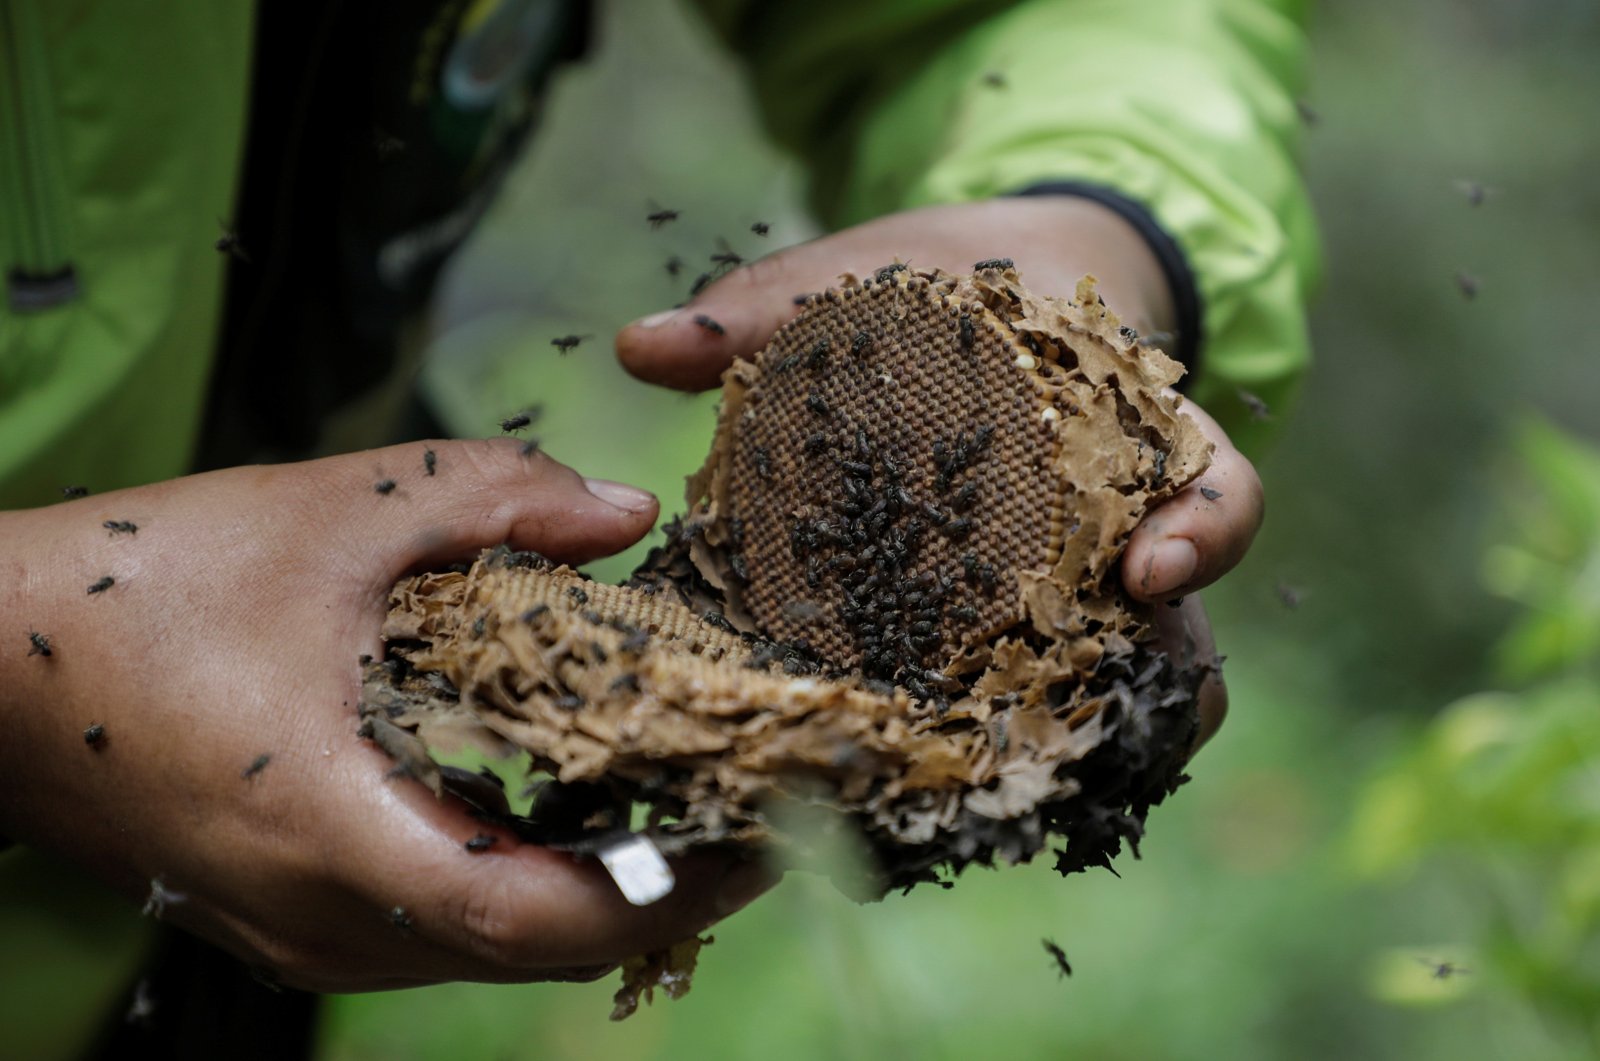 У Болівії подружжя створило заповідник для медоносних бджіл, які гинуть через рубку лісів, де вони живуть